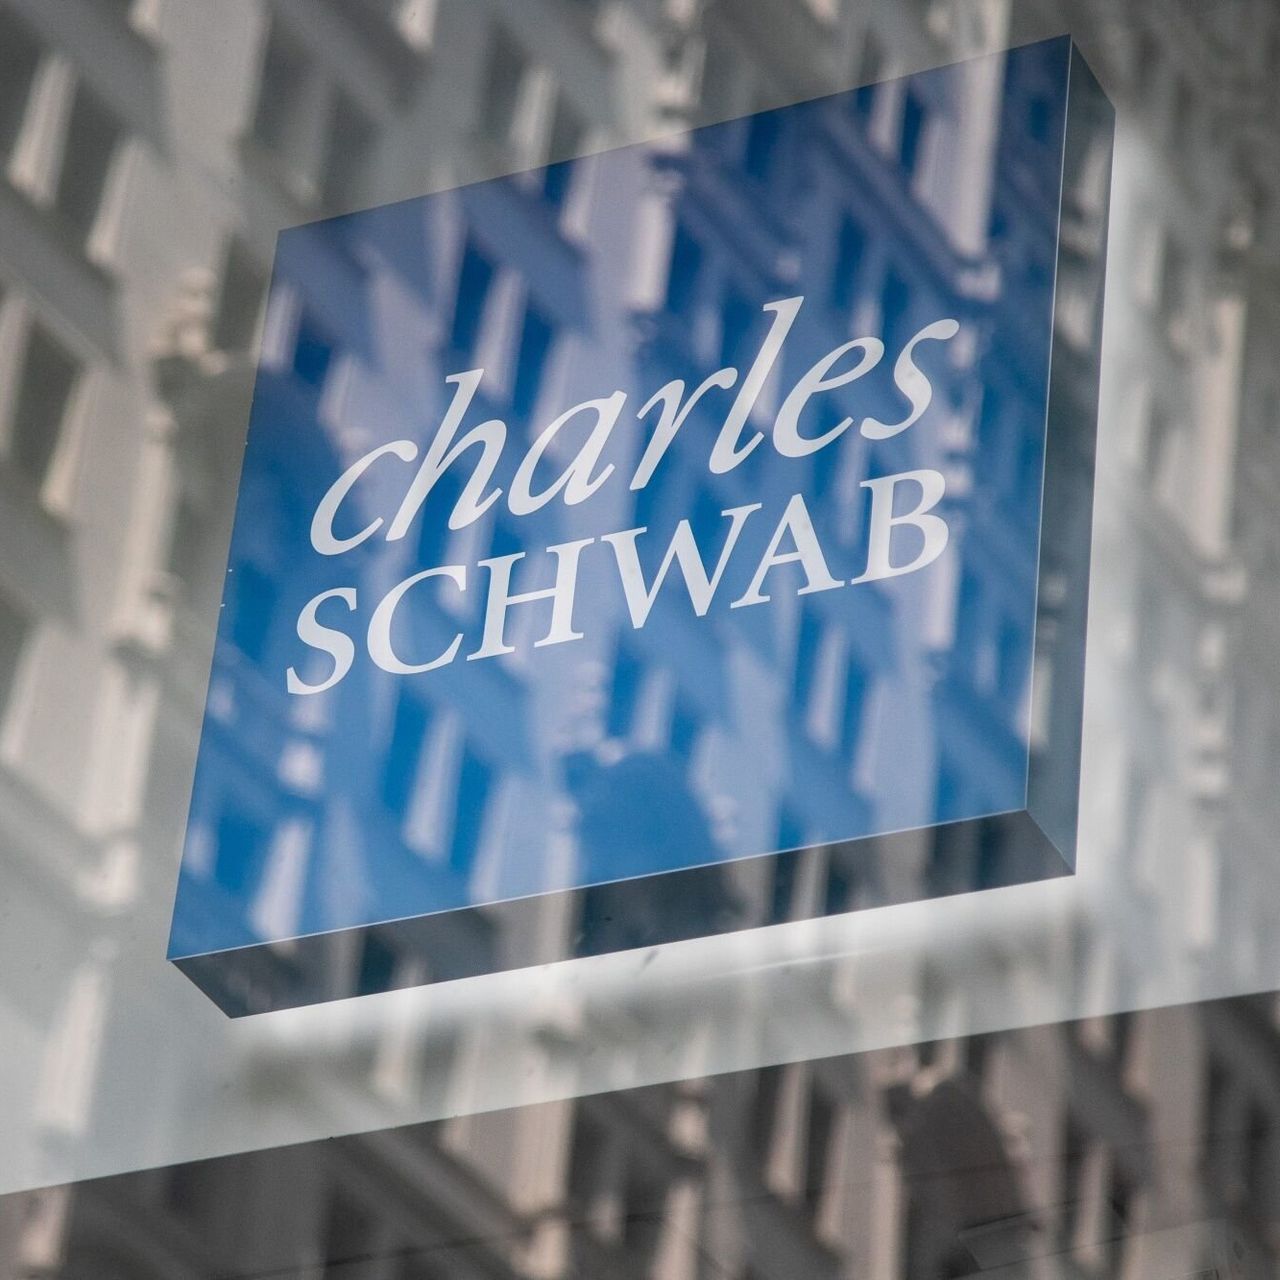 تشارلز شواب Charles Schwab تعلن عن نمو إدارة الأصول وسط انخفاض بنسبة 16% في إيرادات الربع الثالث